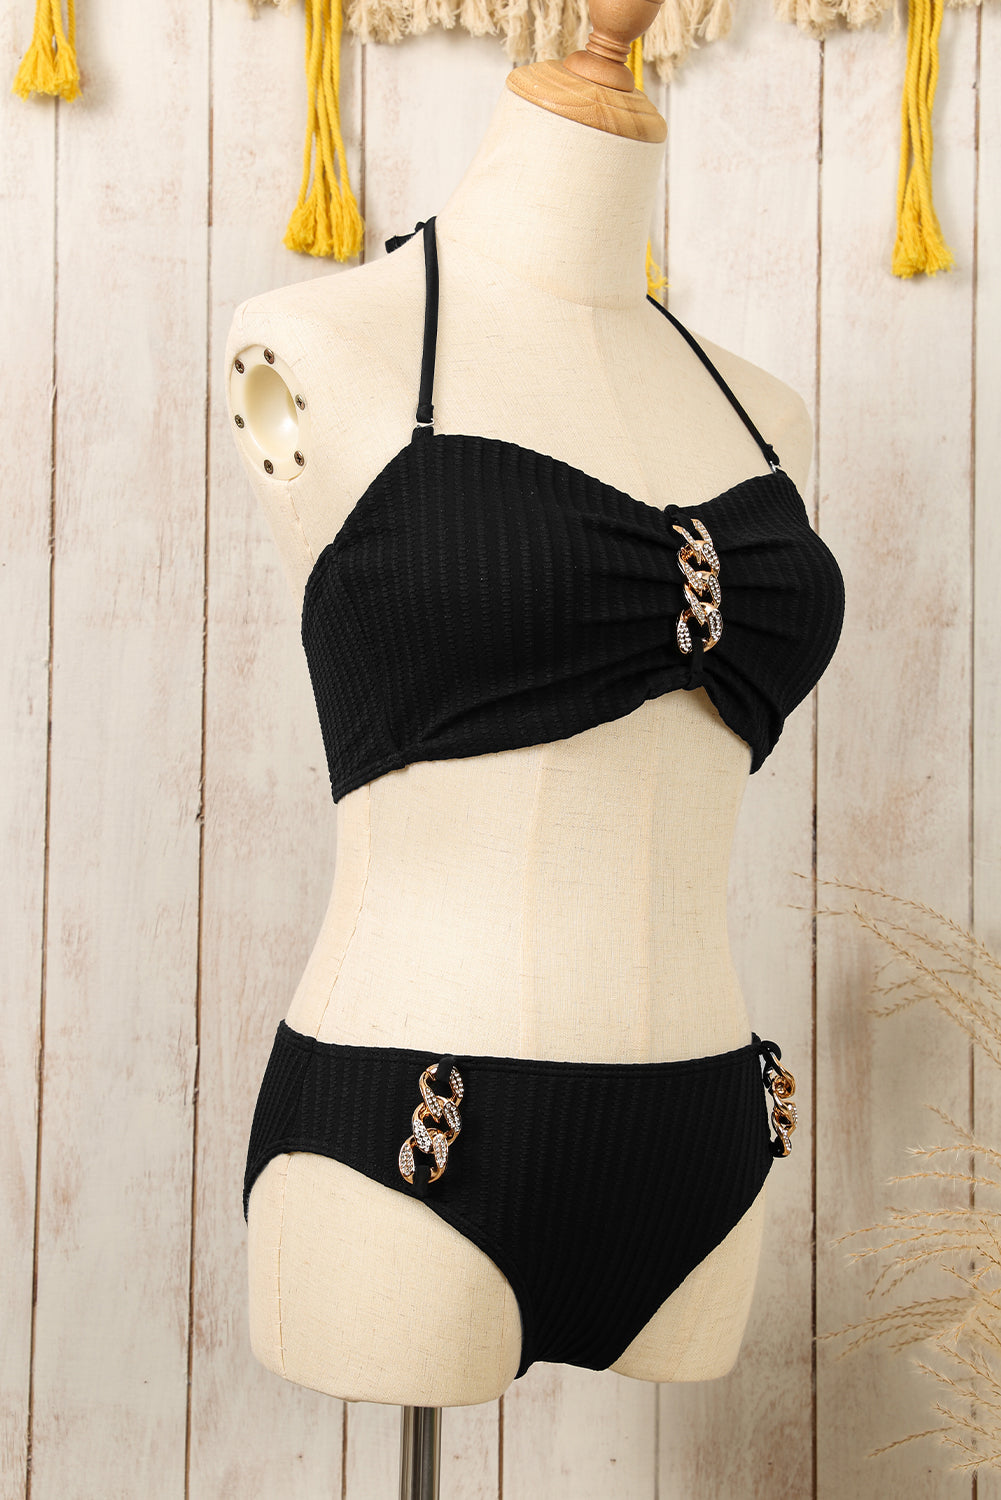 Komplet bikinija s crnim vještačkim kamenčićima s teksturiranim halterima